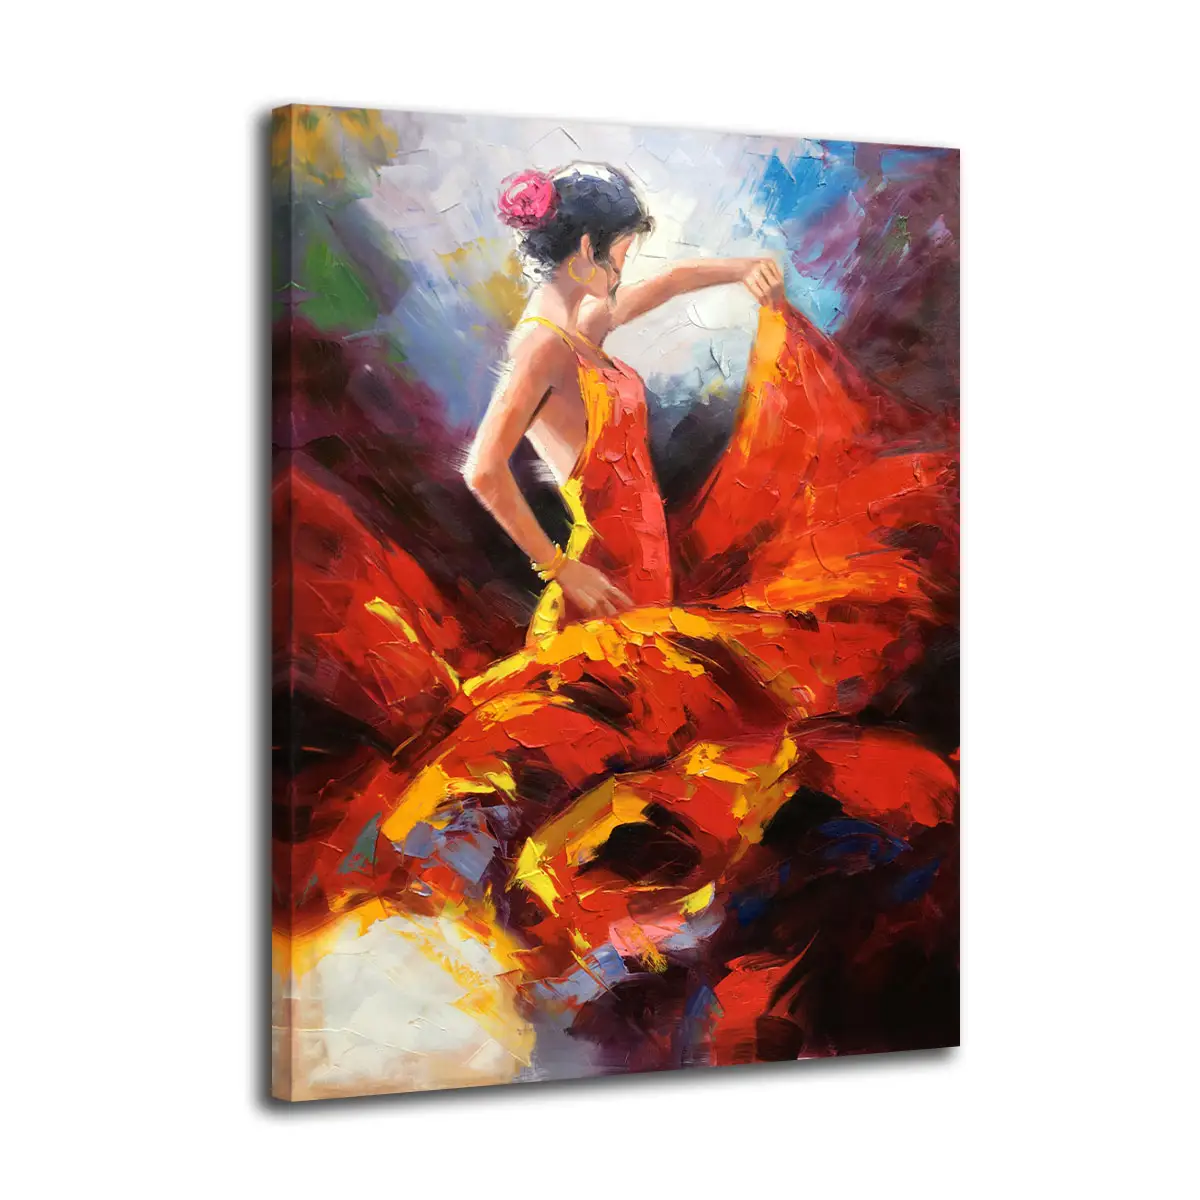 Arte Original 100% Hand-Painted Passional Espanha Menina Dança Flamenco Mulheres Handmade Pintura A Óleo Sobre Tela